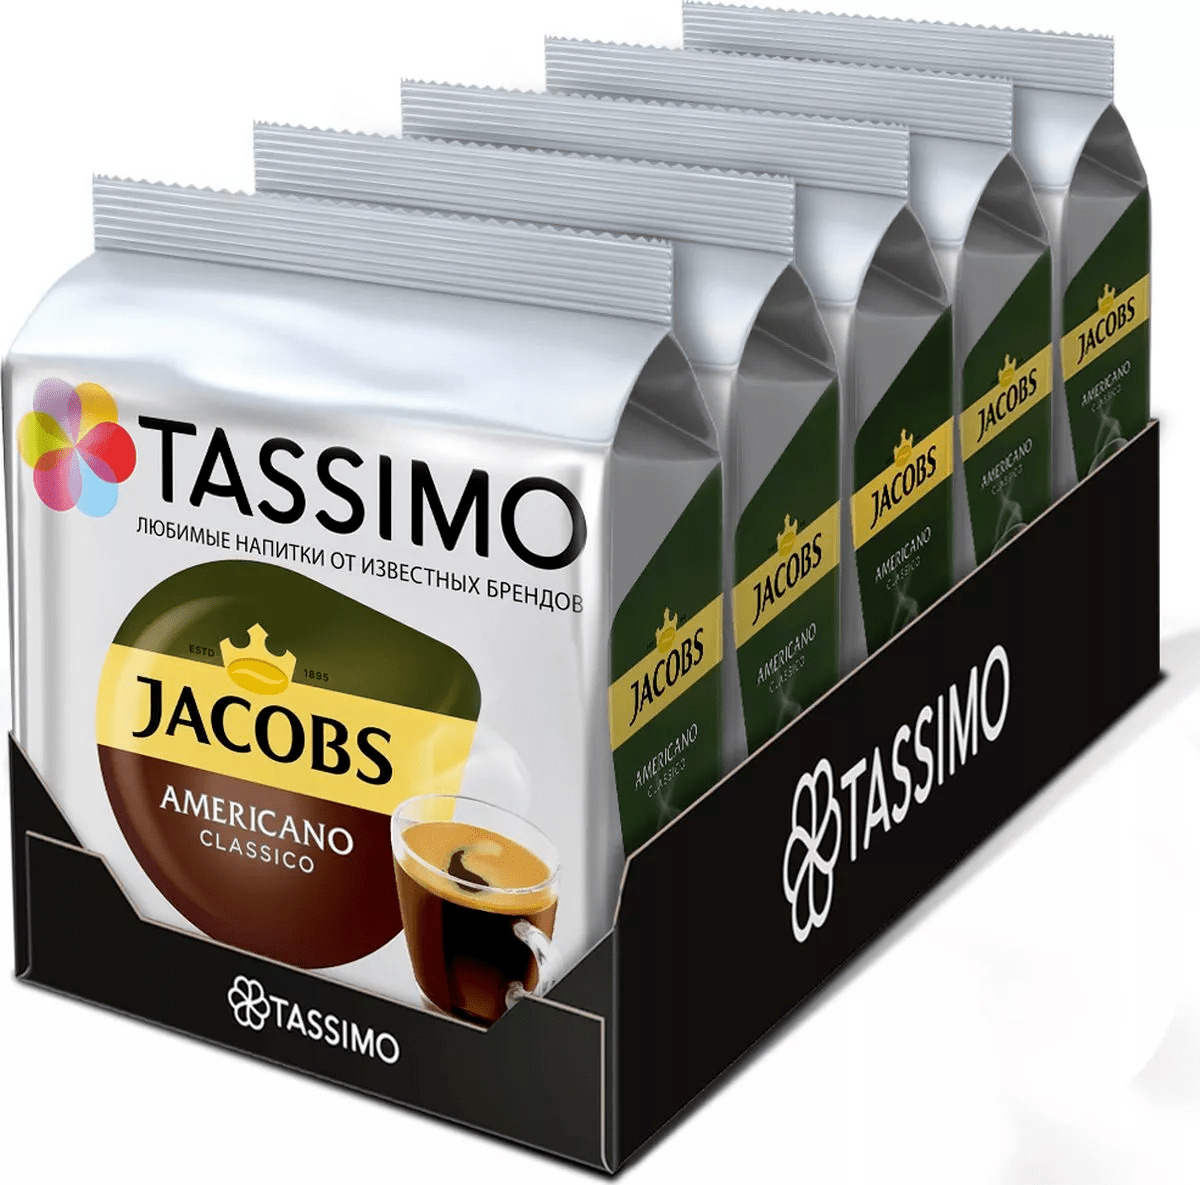 Купить кофе в капсулах Tassimo Jacobs Americano Classico, 80 порций, цены на Мегамаркет | Артикул: 600005601526